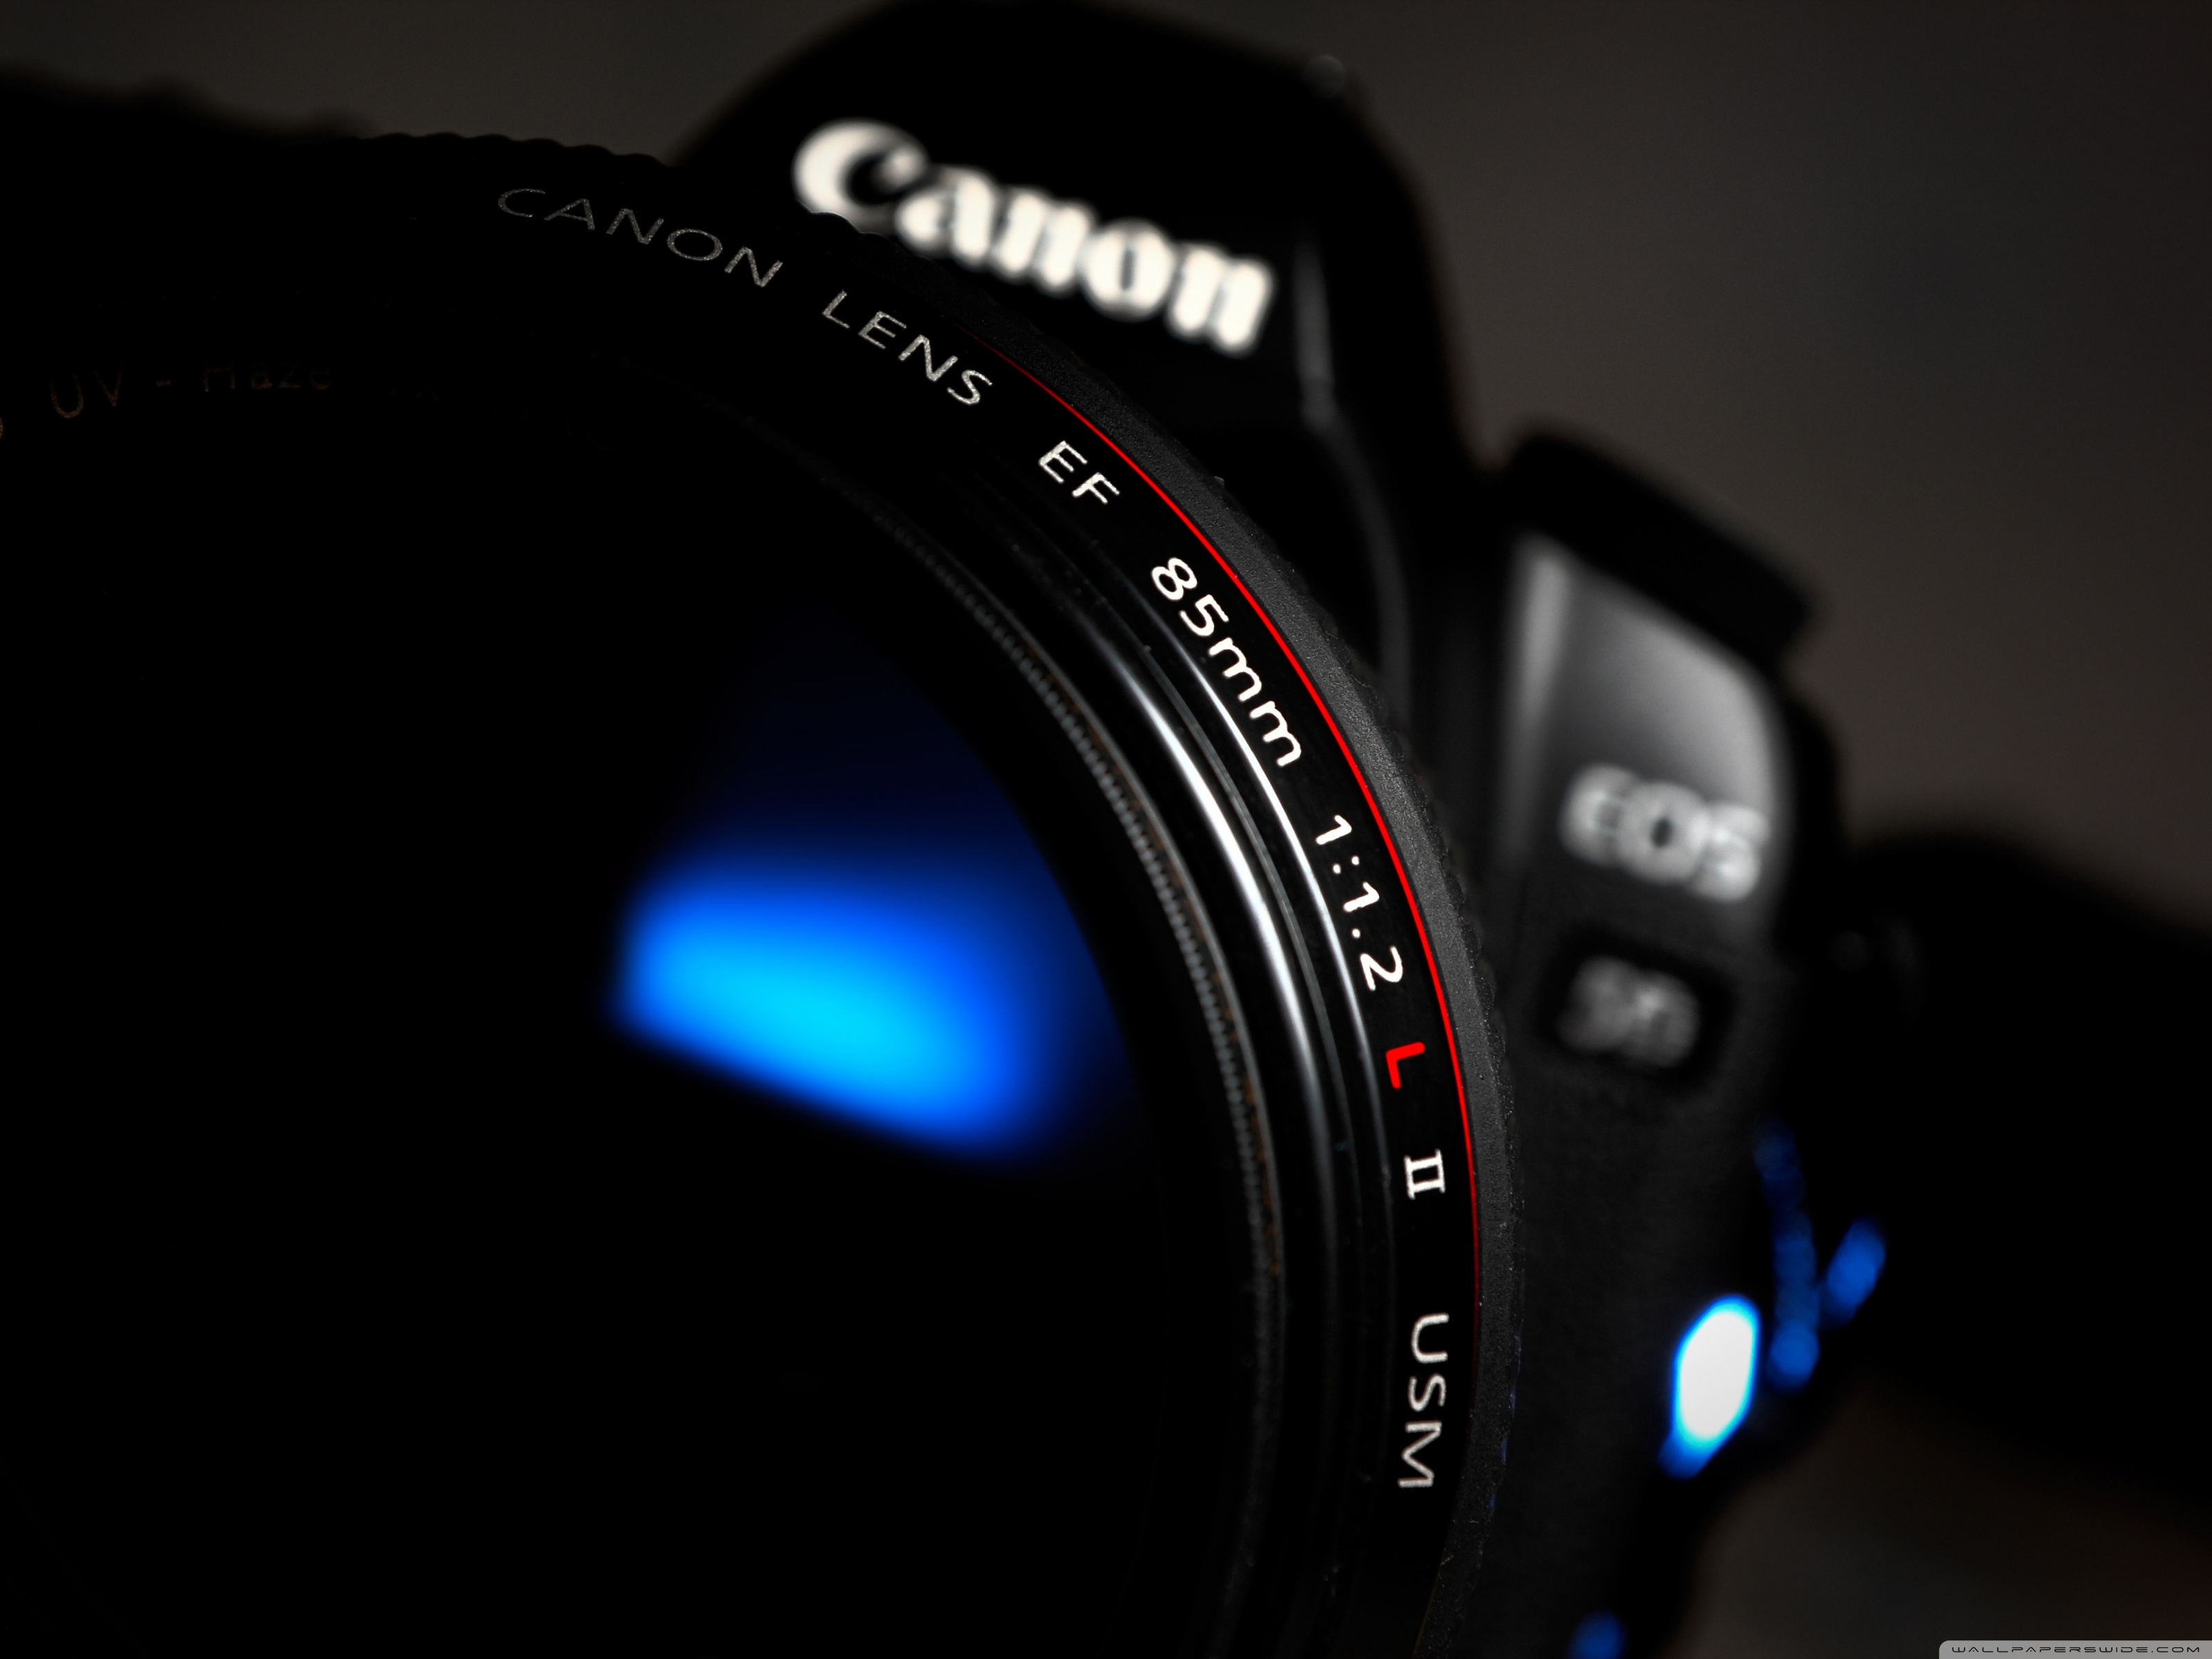 Canon Lens Ultra HD Desktop Background Wallpaper For 4k UHD Tv